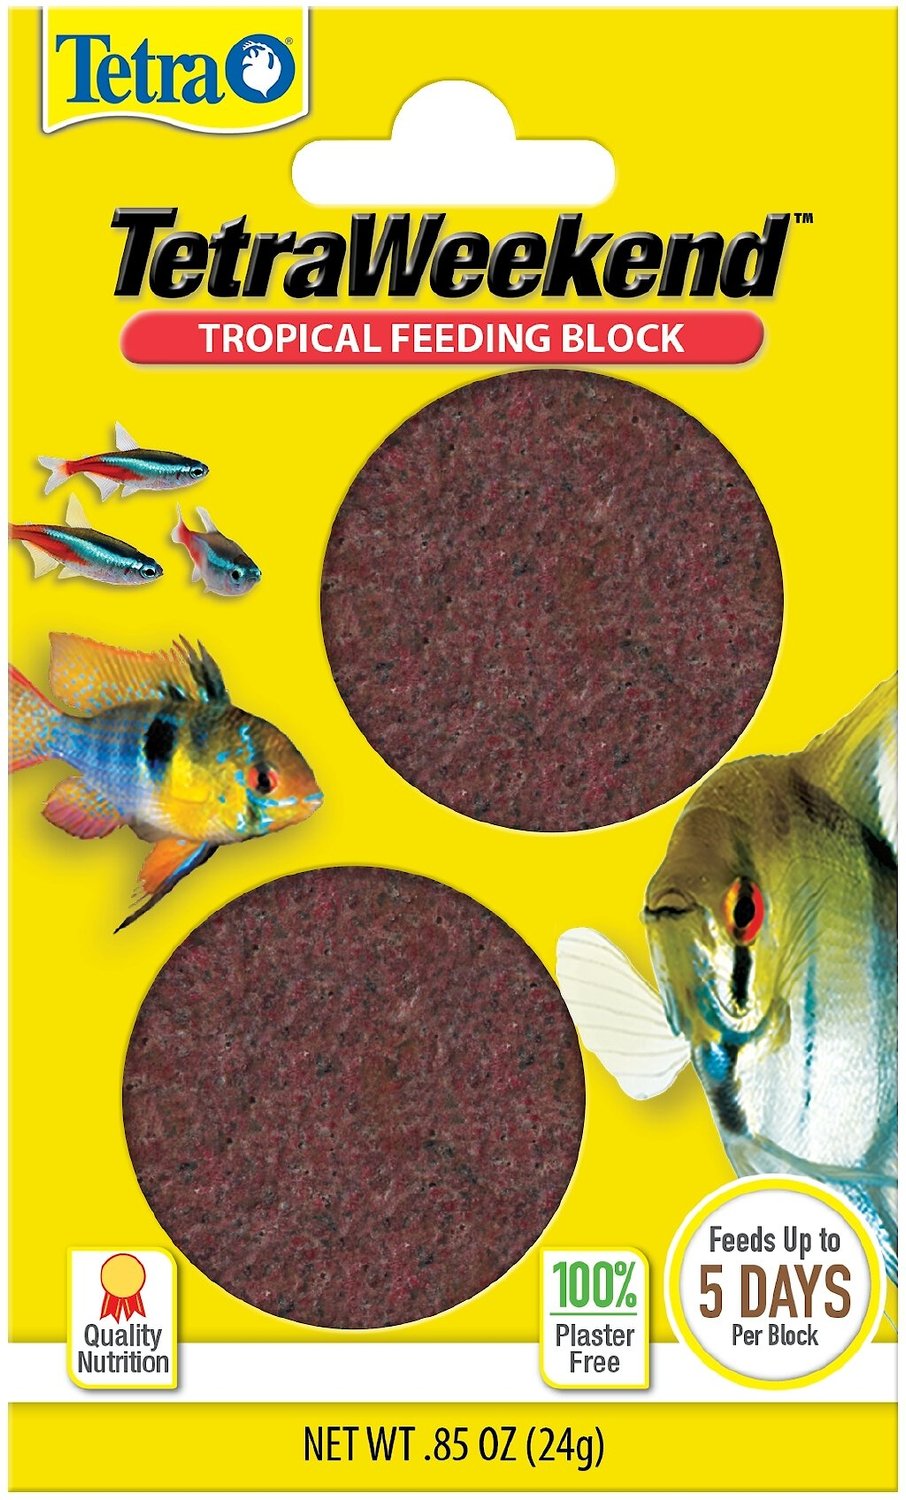 betta fish feeding block